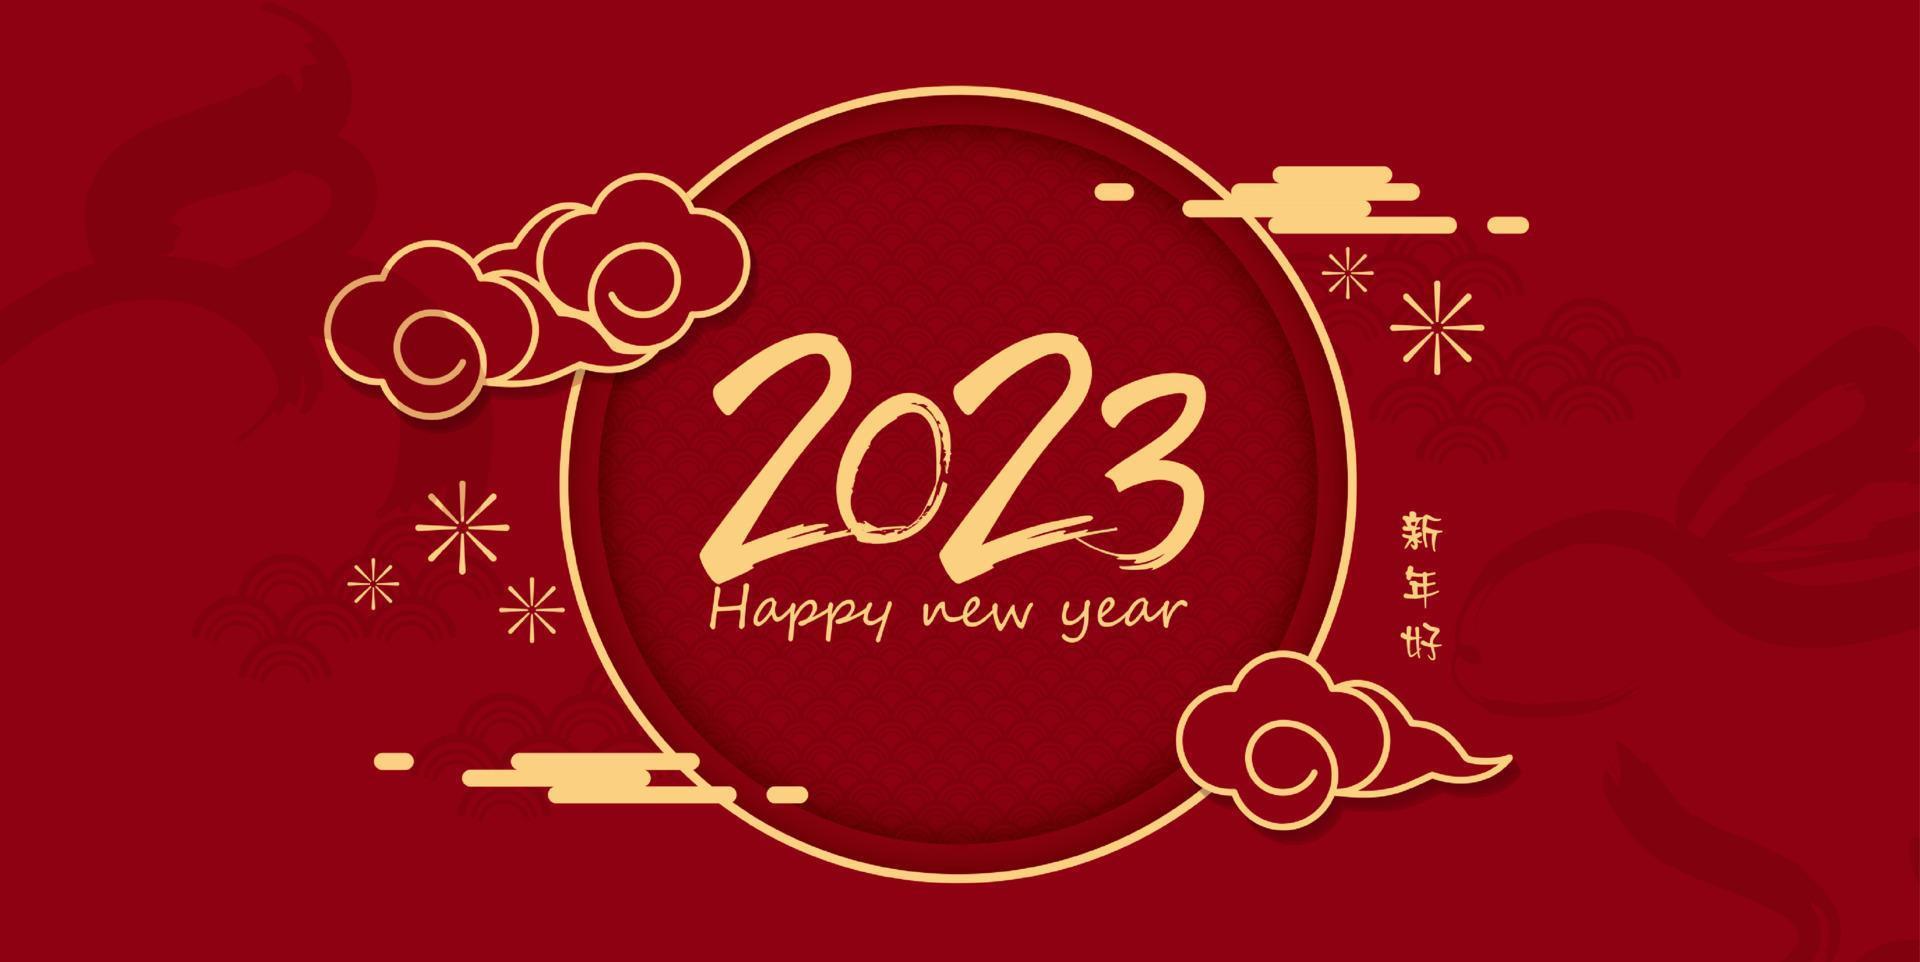 feliz año nuevo chino 2023 año del conejo para tarjeta de felicitación, afiche, pancarta, folleto, calendario. personajes de arte de línea roja y dorada. diseño vectorial traducción feliz año nuevo vector